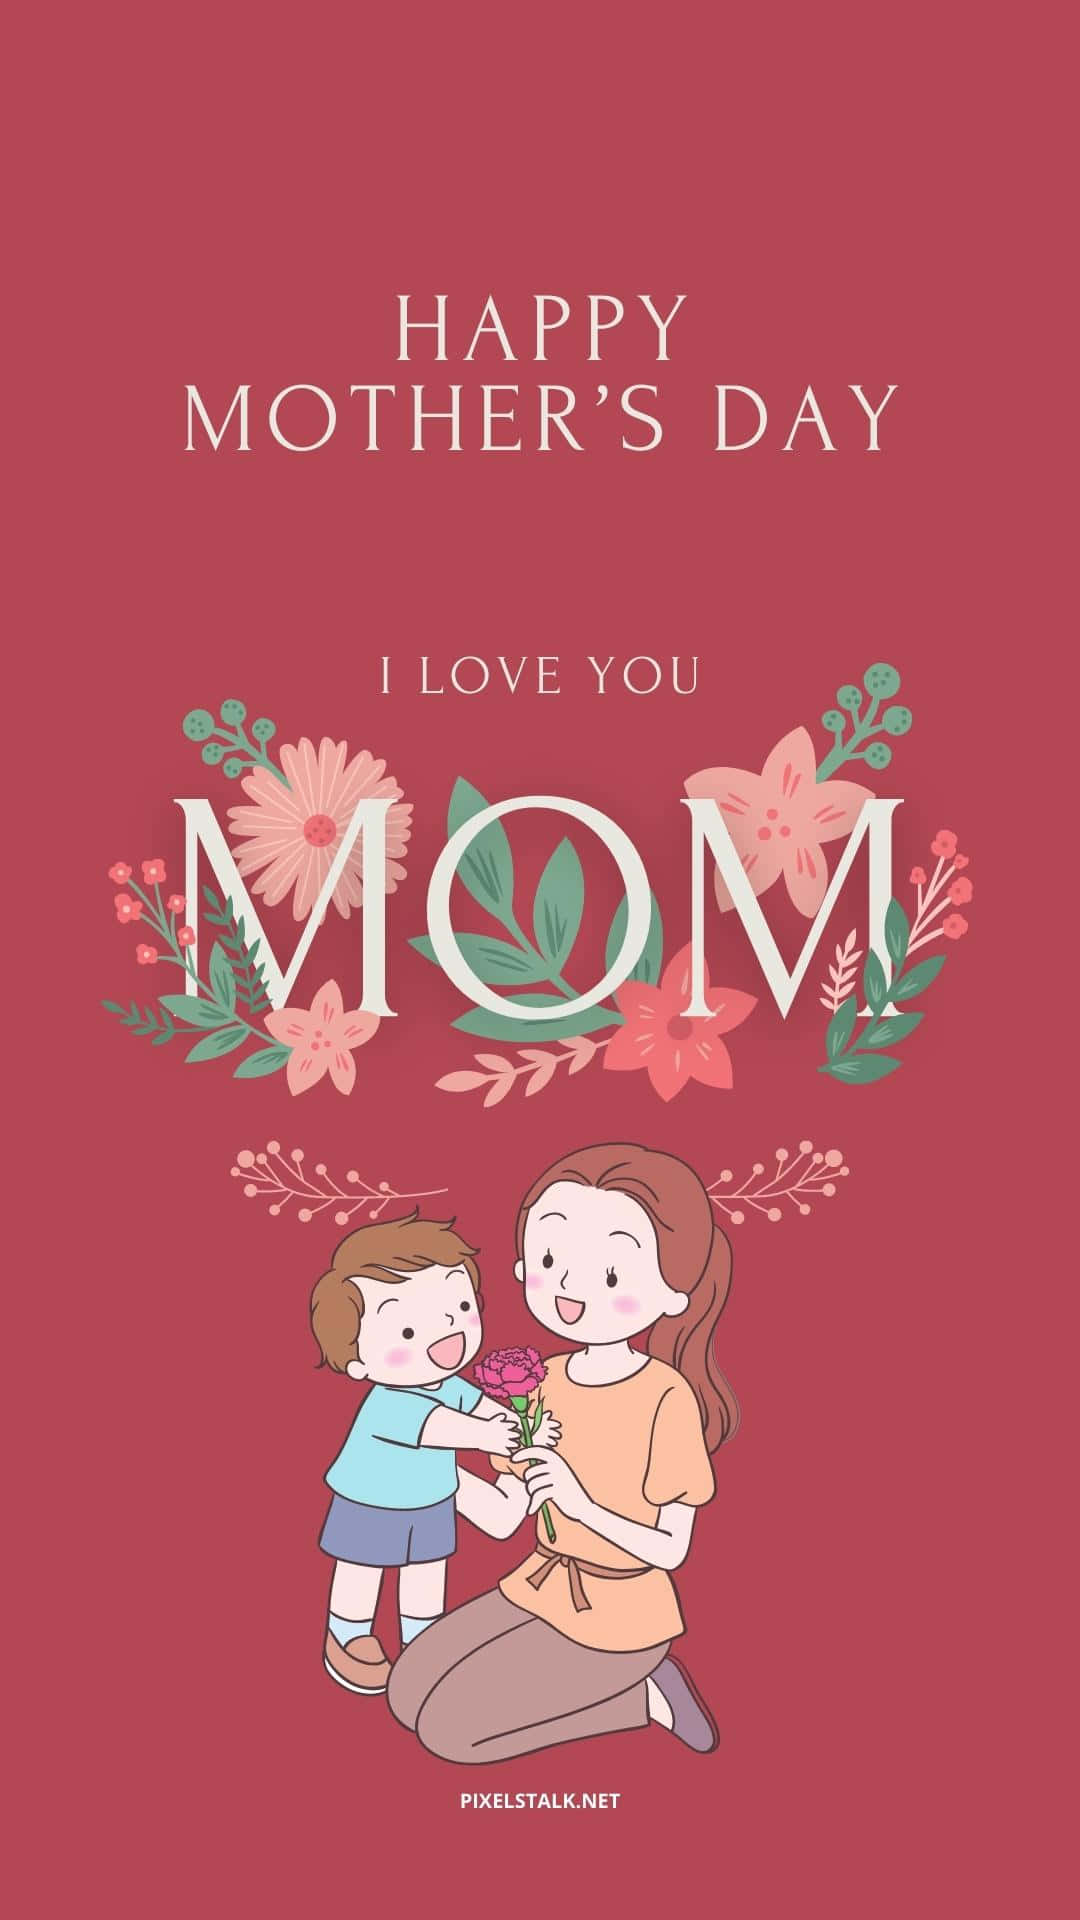 Feiernsie Ihre Mütter In Diesem Jahr Mit Einem Wunderschönen Happy Mothers Day Hd Wallpaper! Wallpaper